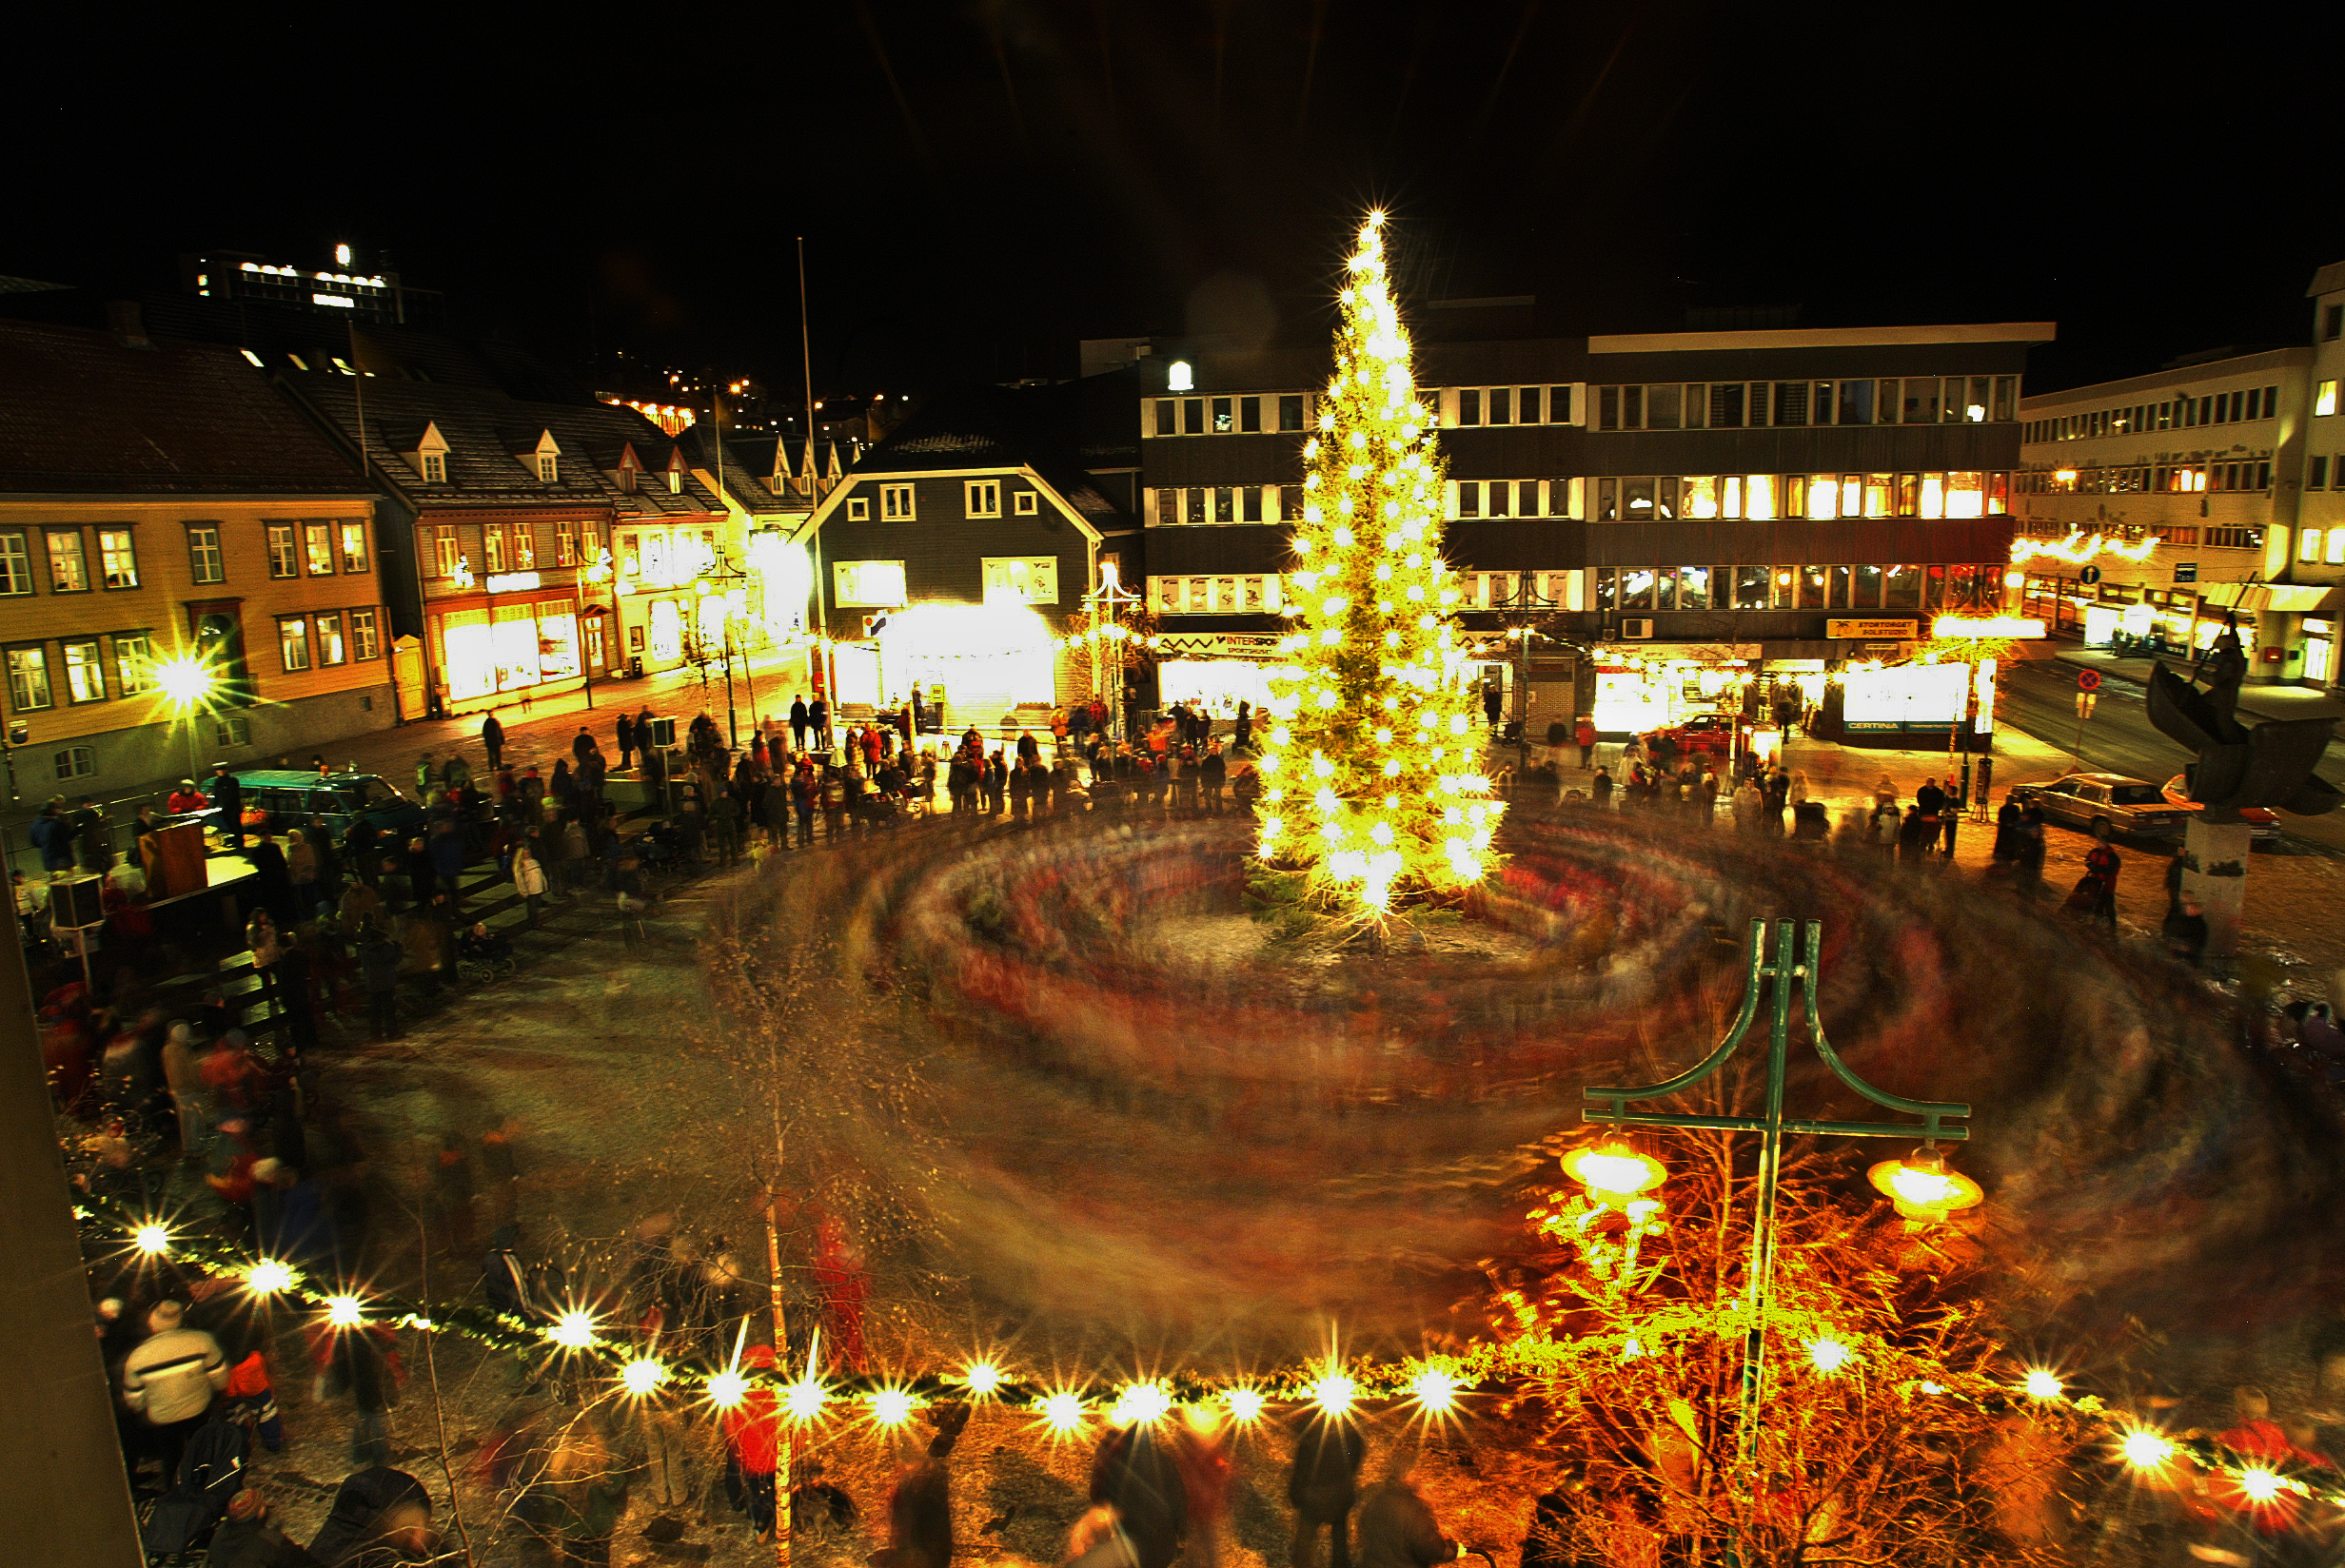 Feierliche Erleuchtung des Weihnachtsbaums in Tromsø am ersten Adventsonntag. Man geht um den Baum herum und singt Weihnachtslieder FOTO: YNGVE OLSEN SÆBBE / NORDLYS yngve.olsen.saebbe@nordlys.no